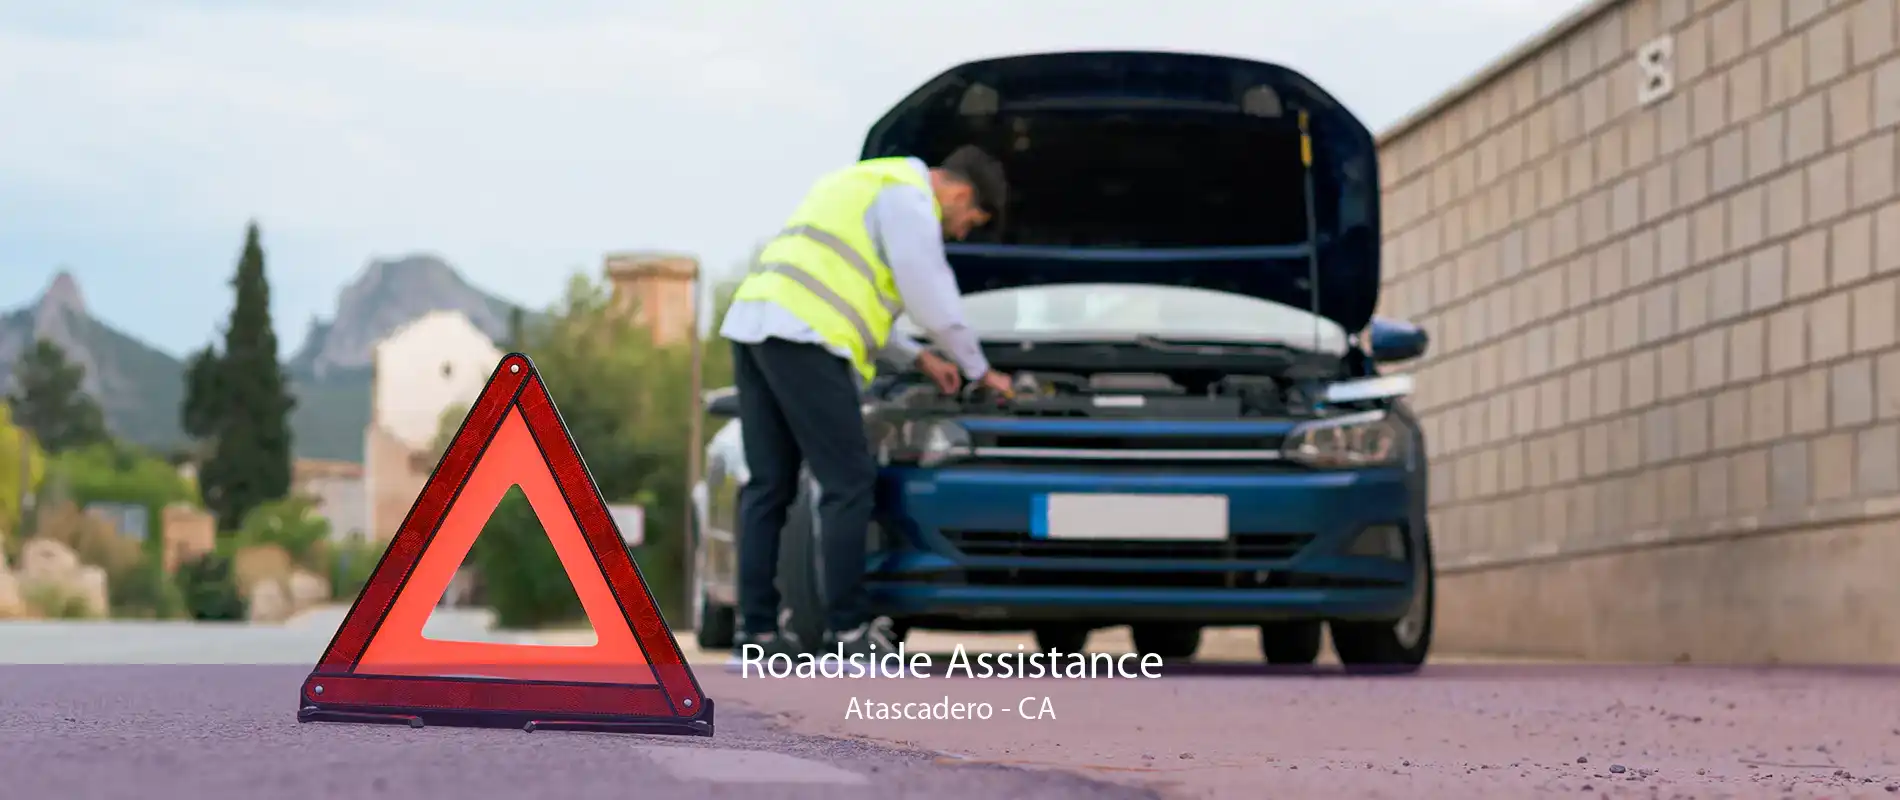 Roadside Assistance Atascadero - CA